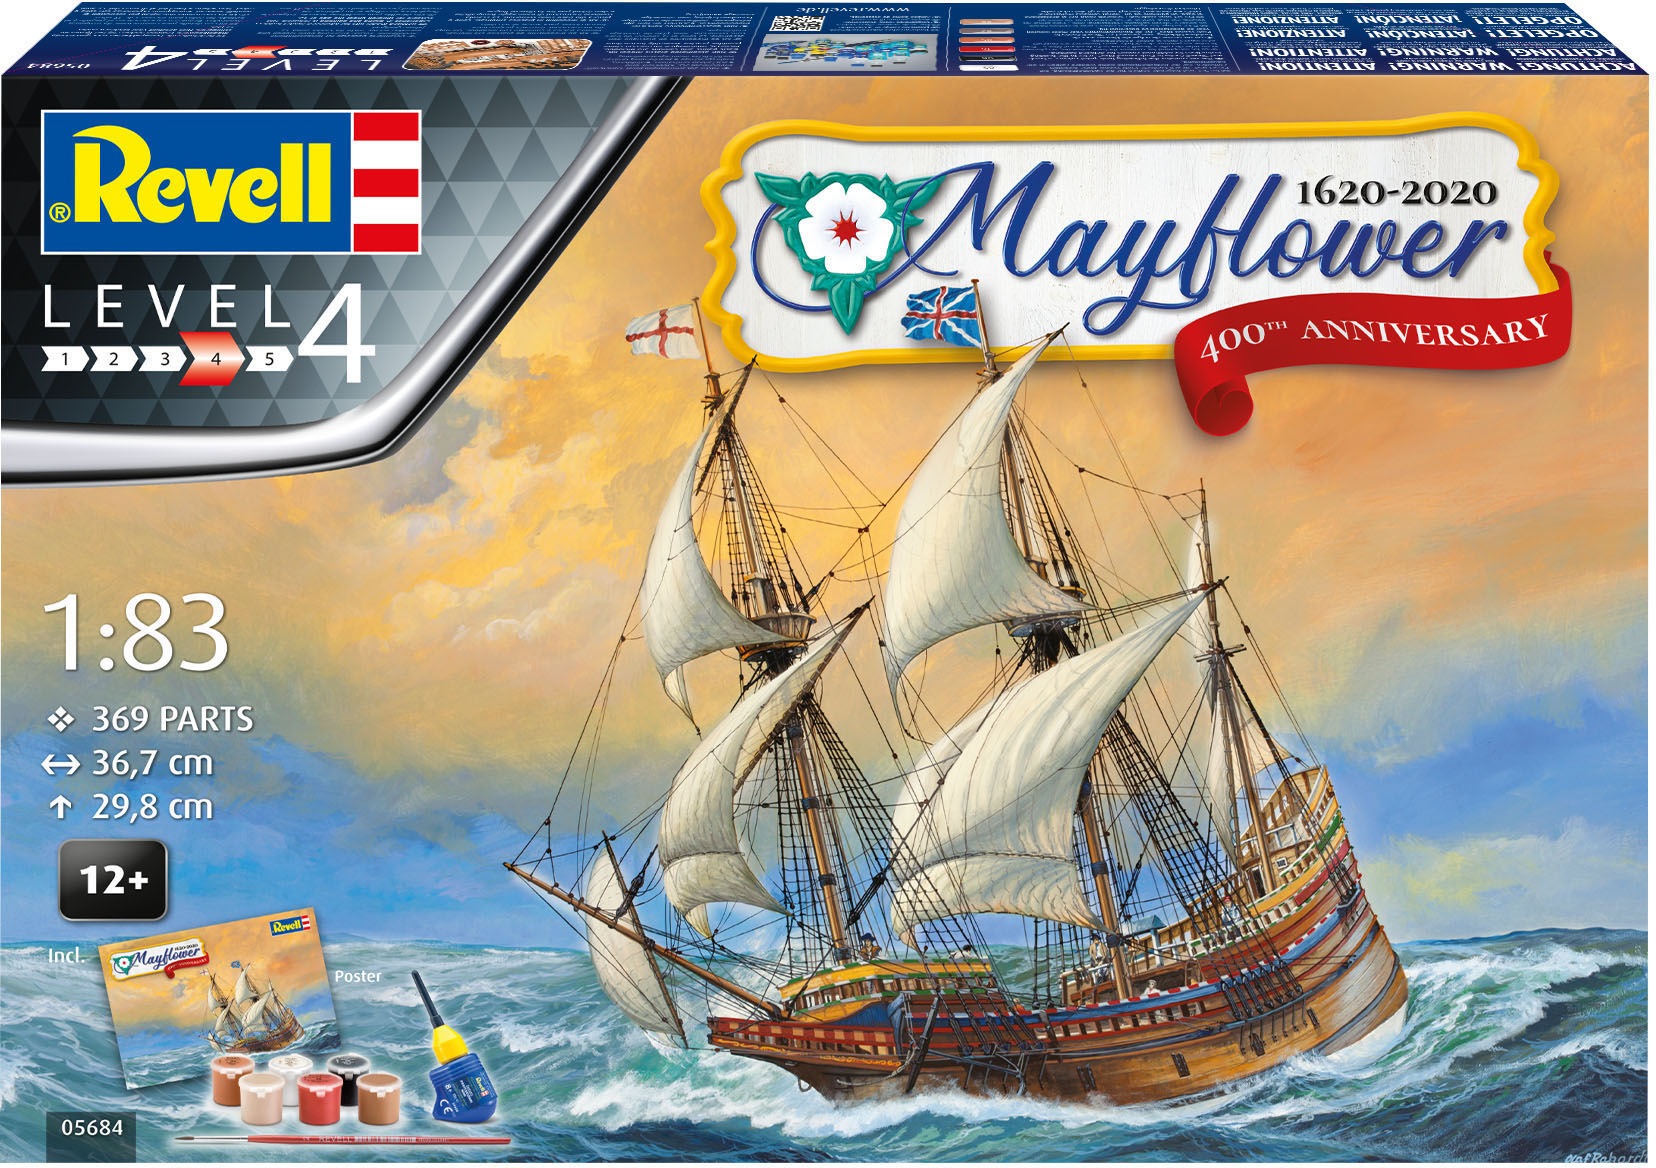 Revell® Modellbausatz »Mayflower«, 1:83, Made in Europe